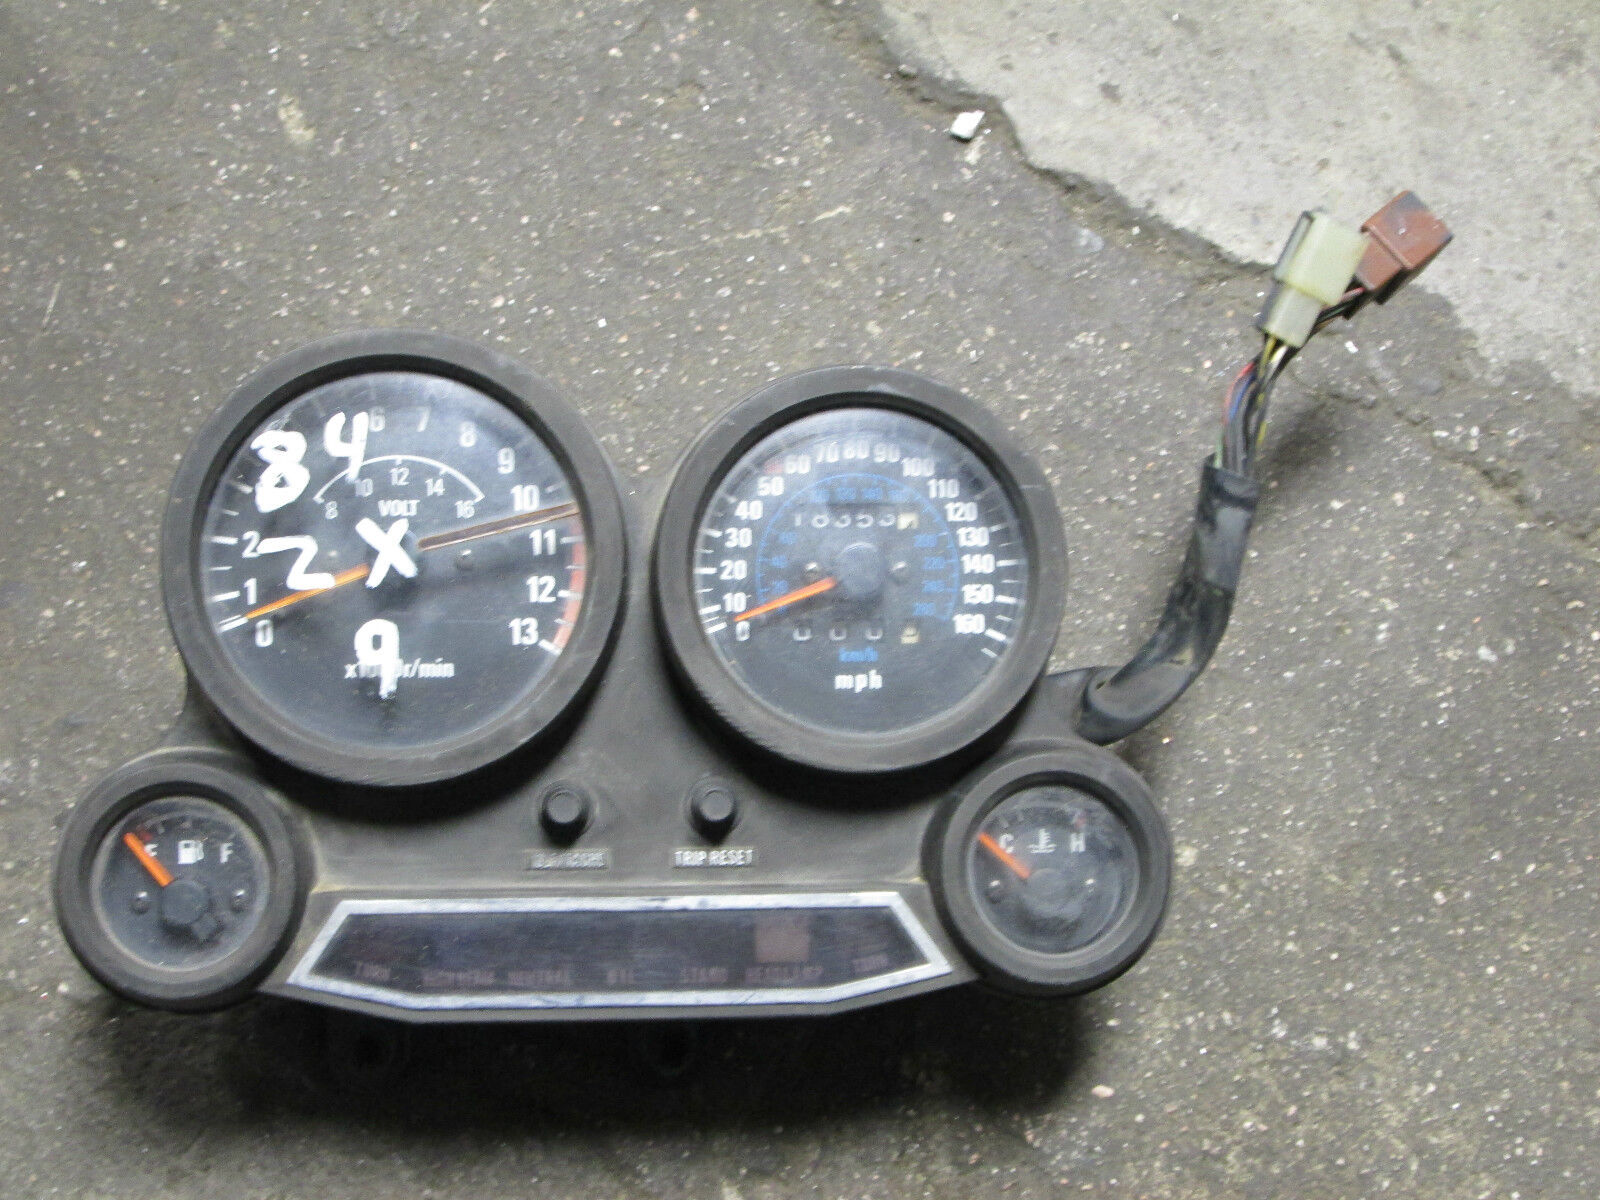 1984 kawasaki zx9 speedometer, 4/20d